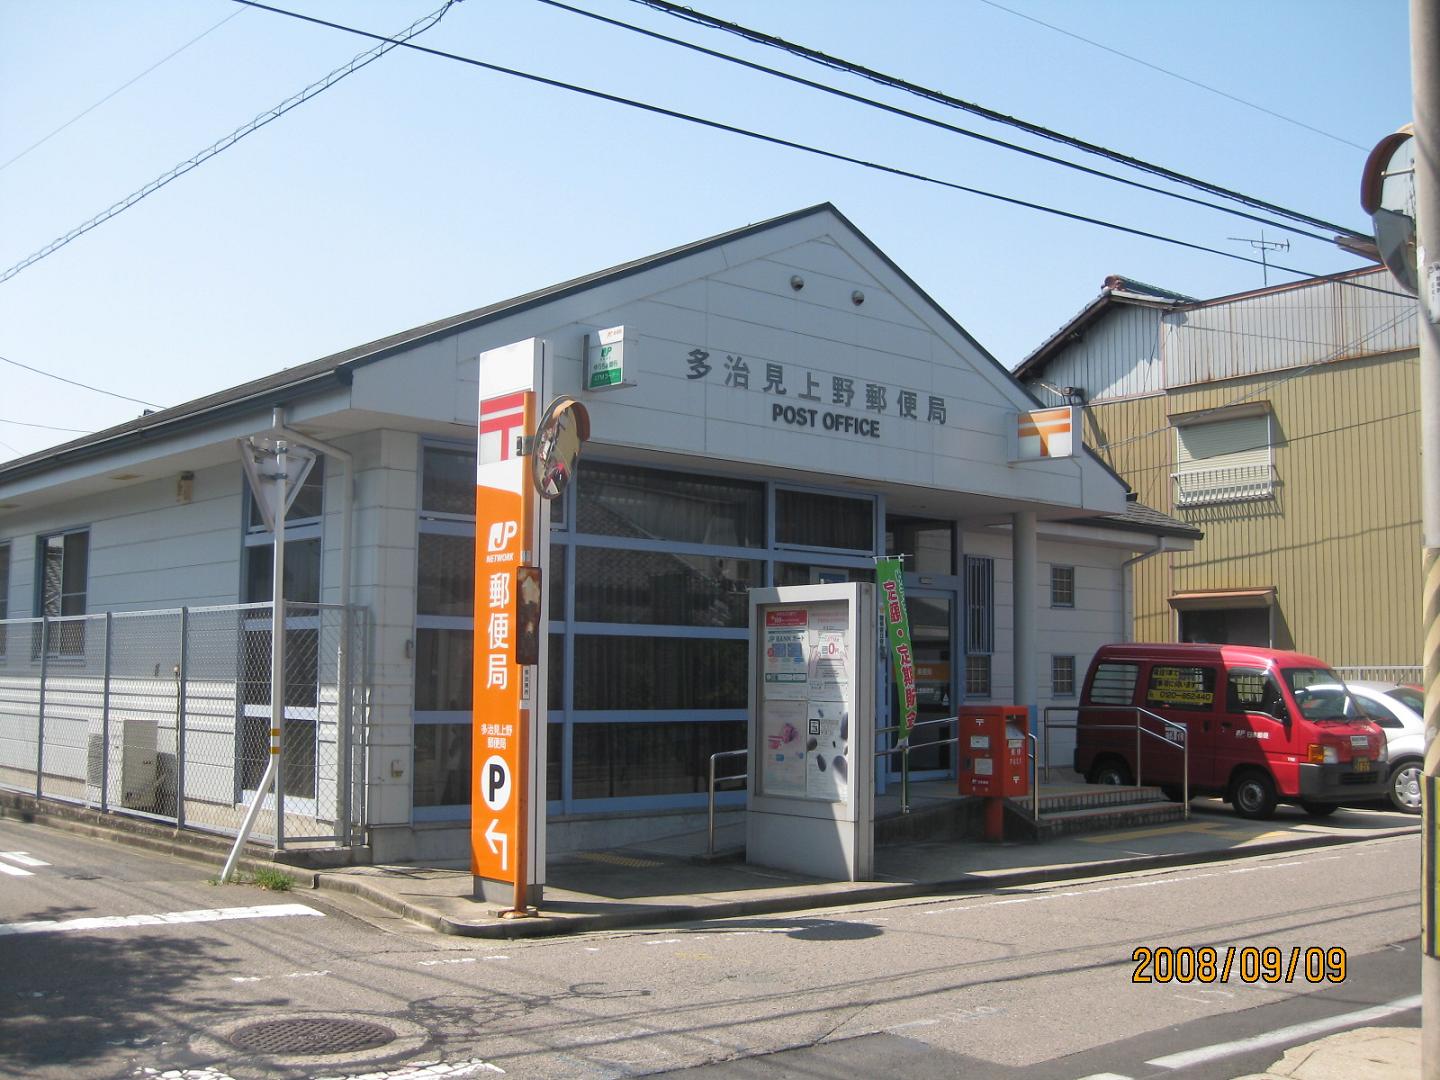 post office. 200m to Ueno post office (post office)